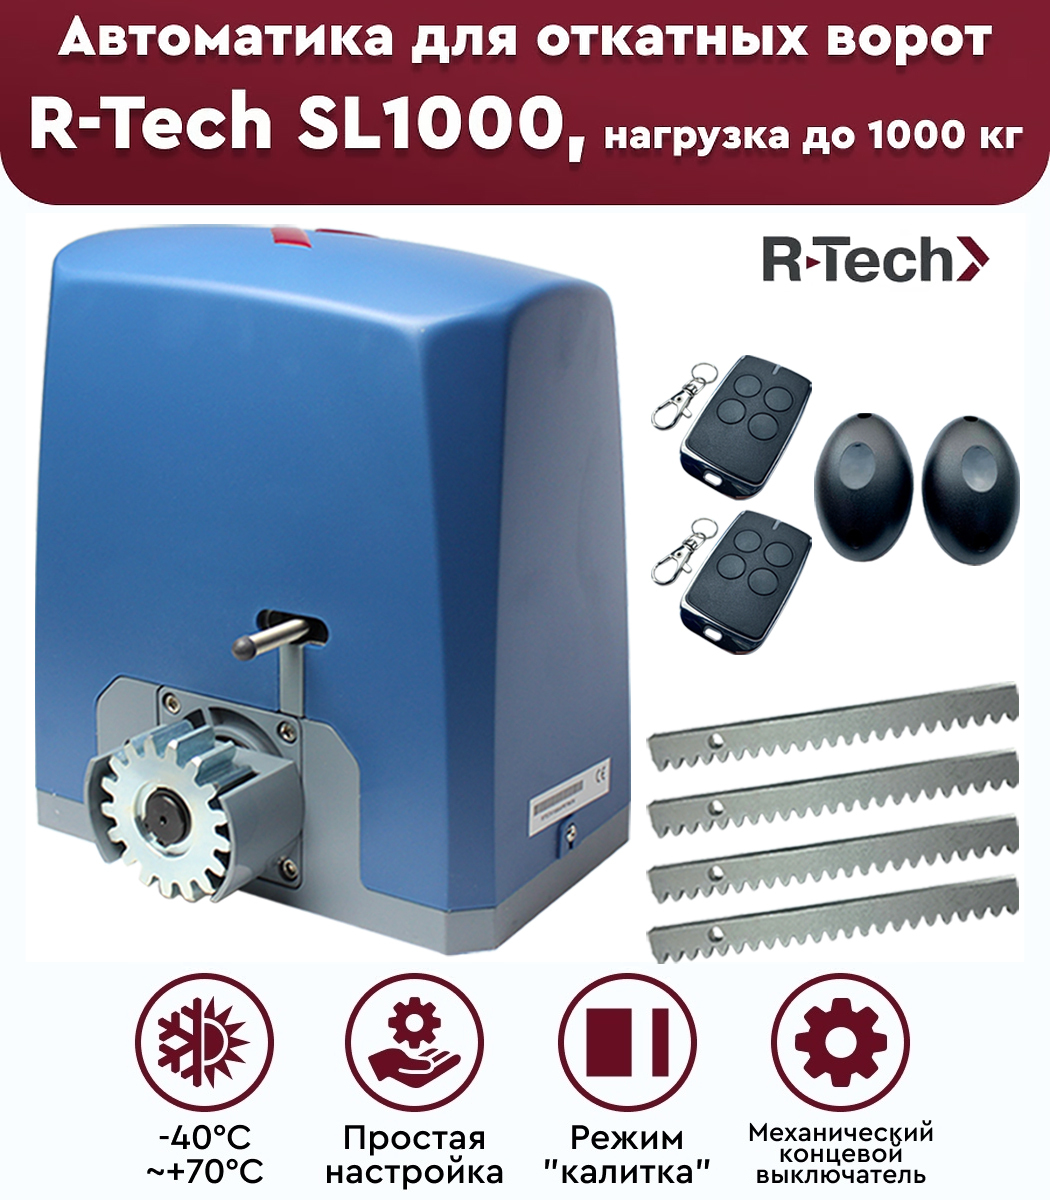 Автоматика r tech. Антенна для привода ворот r-Tech sl1000 as. Привод r-Tech sl1000. Концевой механический выключатель для привода sl1000 AC. Автоматика для откатных ворот r-Tech.